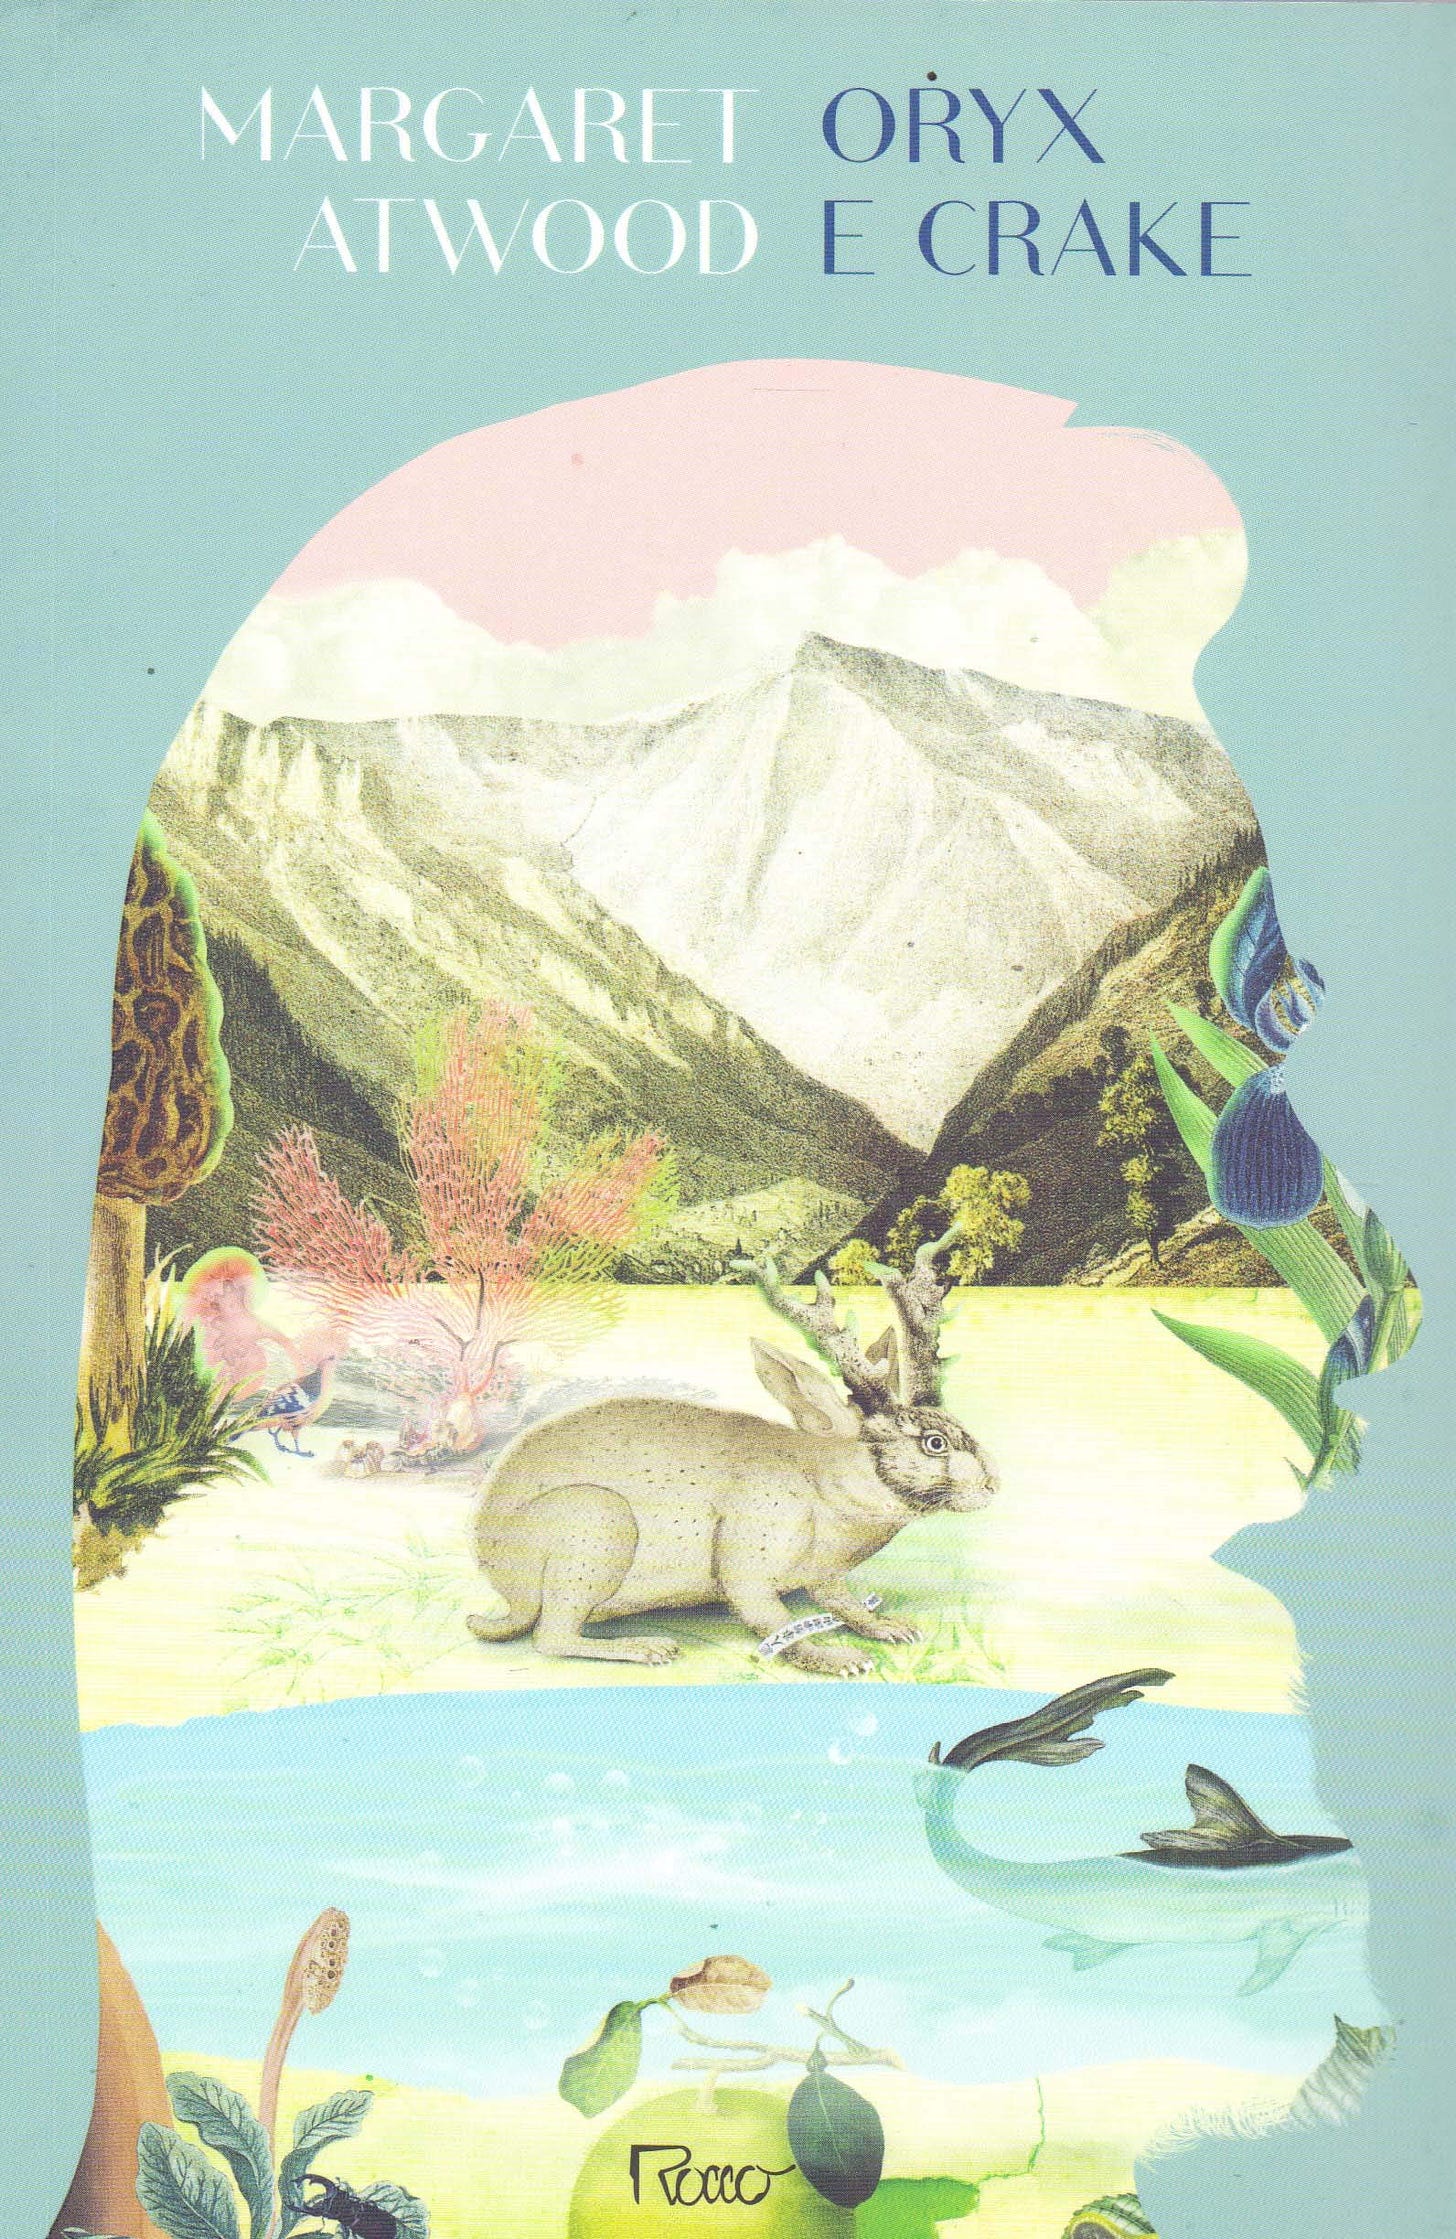 Capa do livro Oryx e Crake. Fundo azul claro, com a ilustração de uma paisagem natural, plantas e frutas, um peixe num lago e um coelho com chifres de alce, dentro do recorte da silhueta de um homem barbudo de perfil.